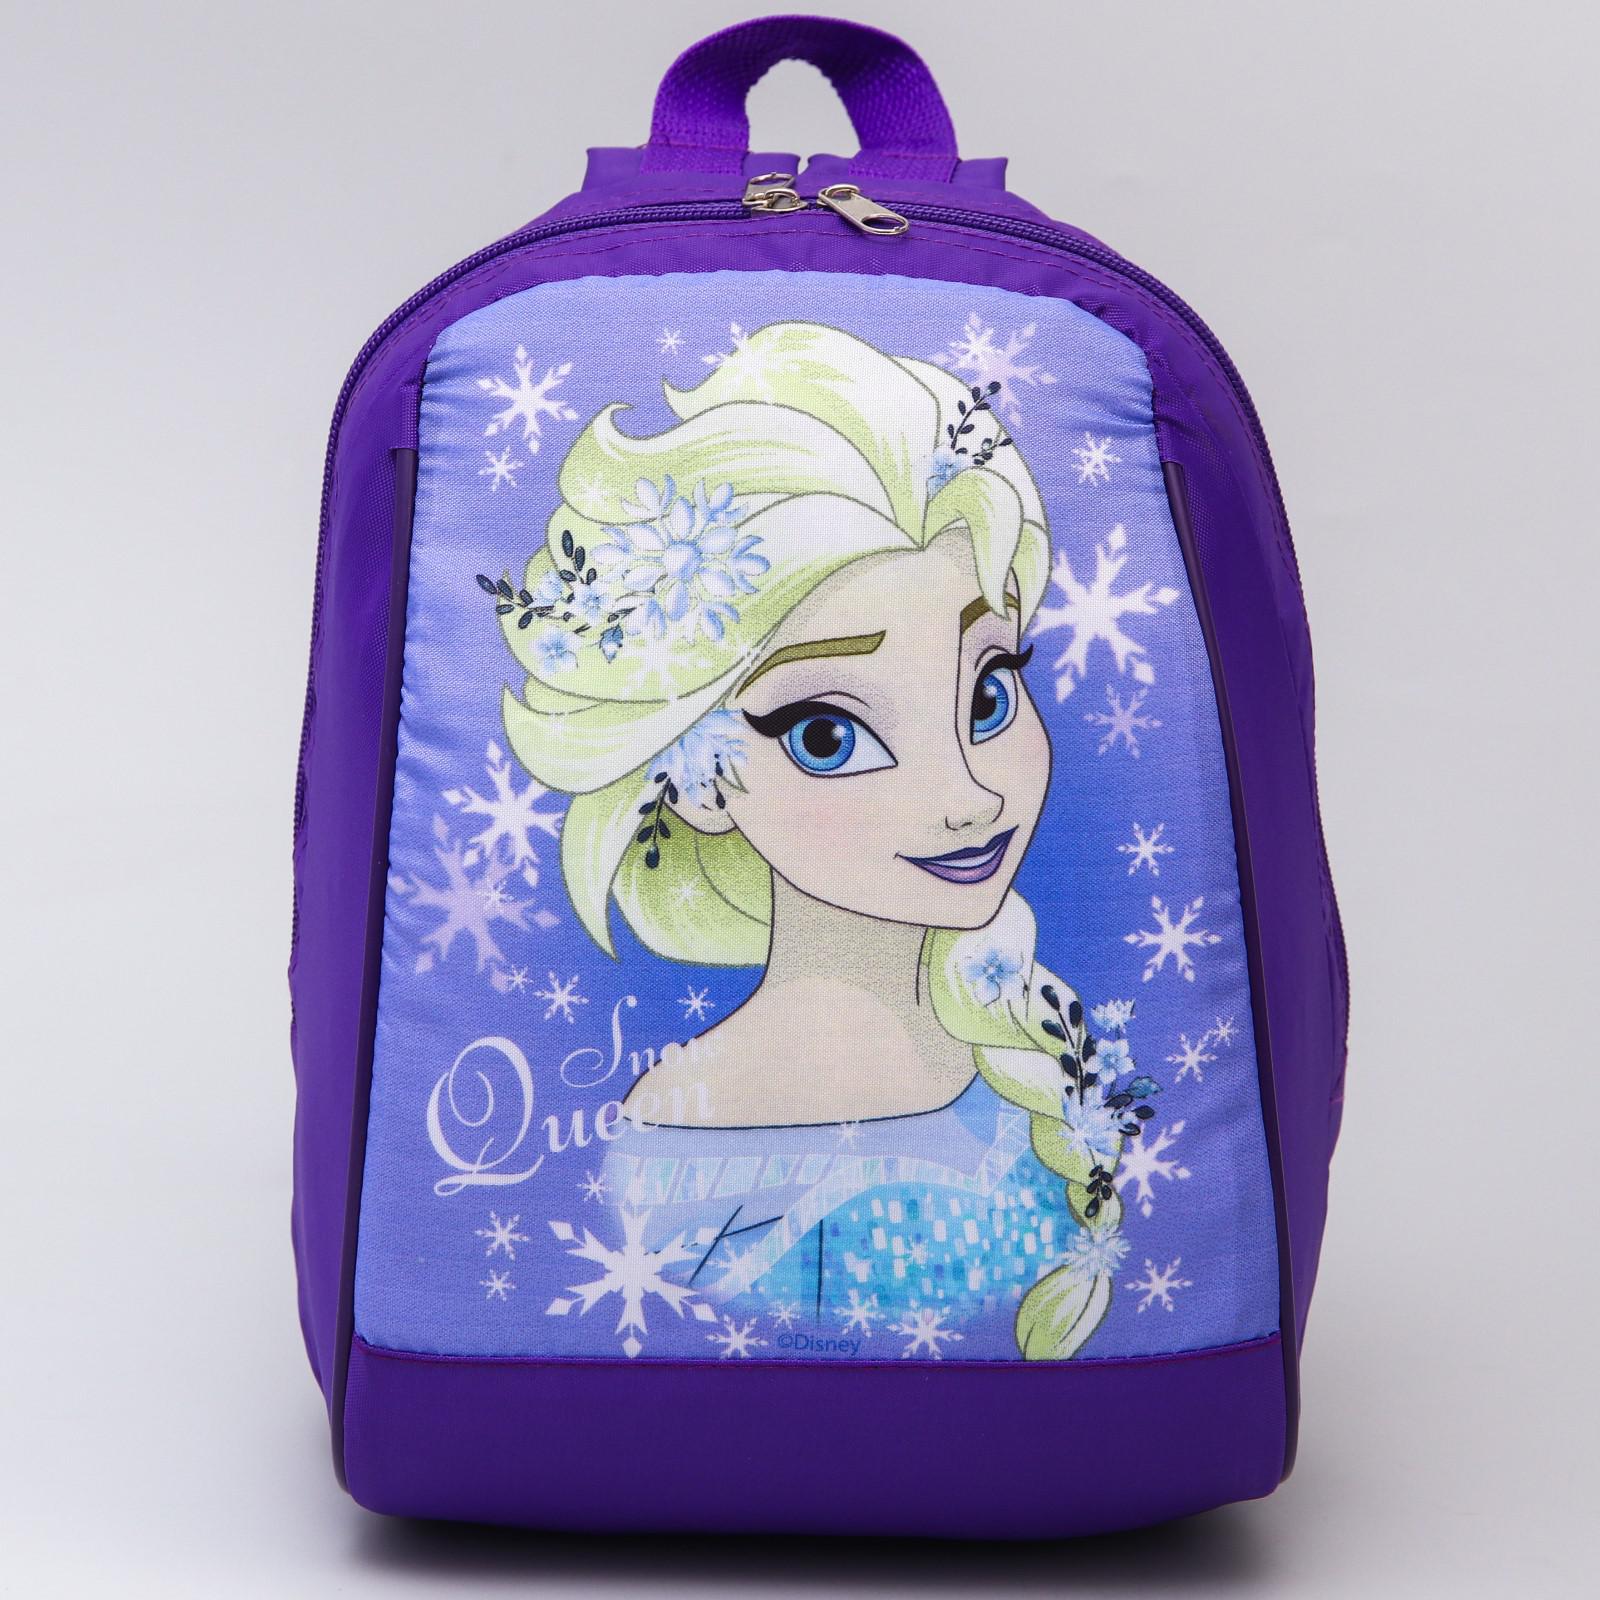 Рюкзак Disney Холодное сердце на молнии сиреневый - фото 2